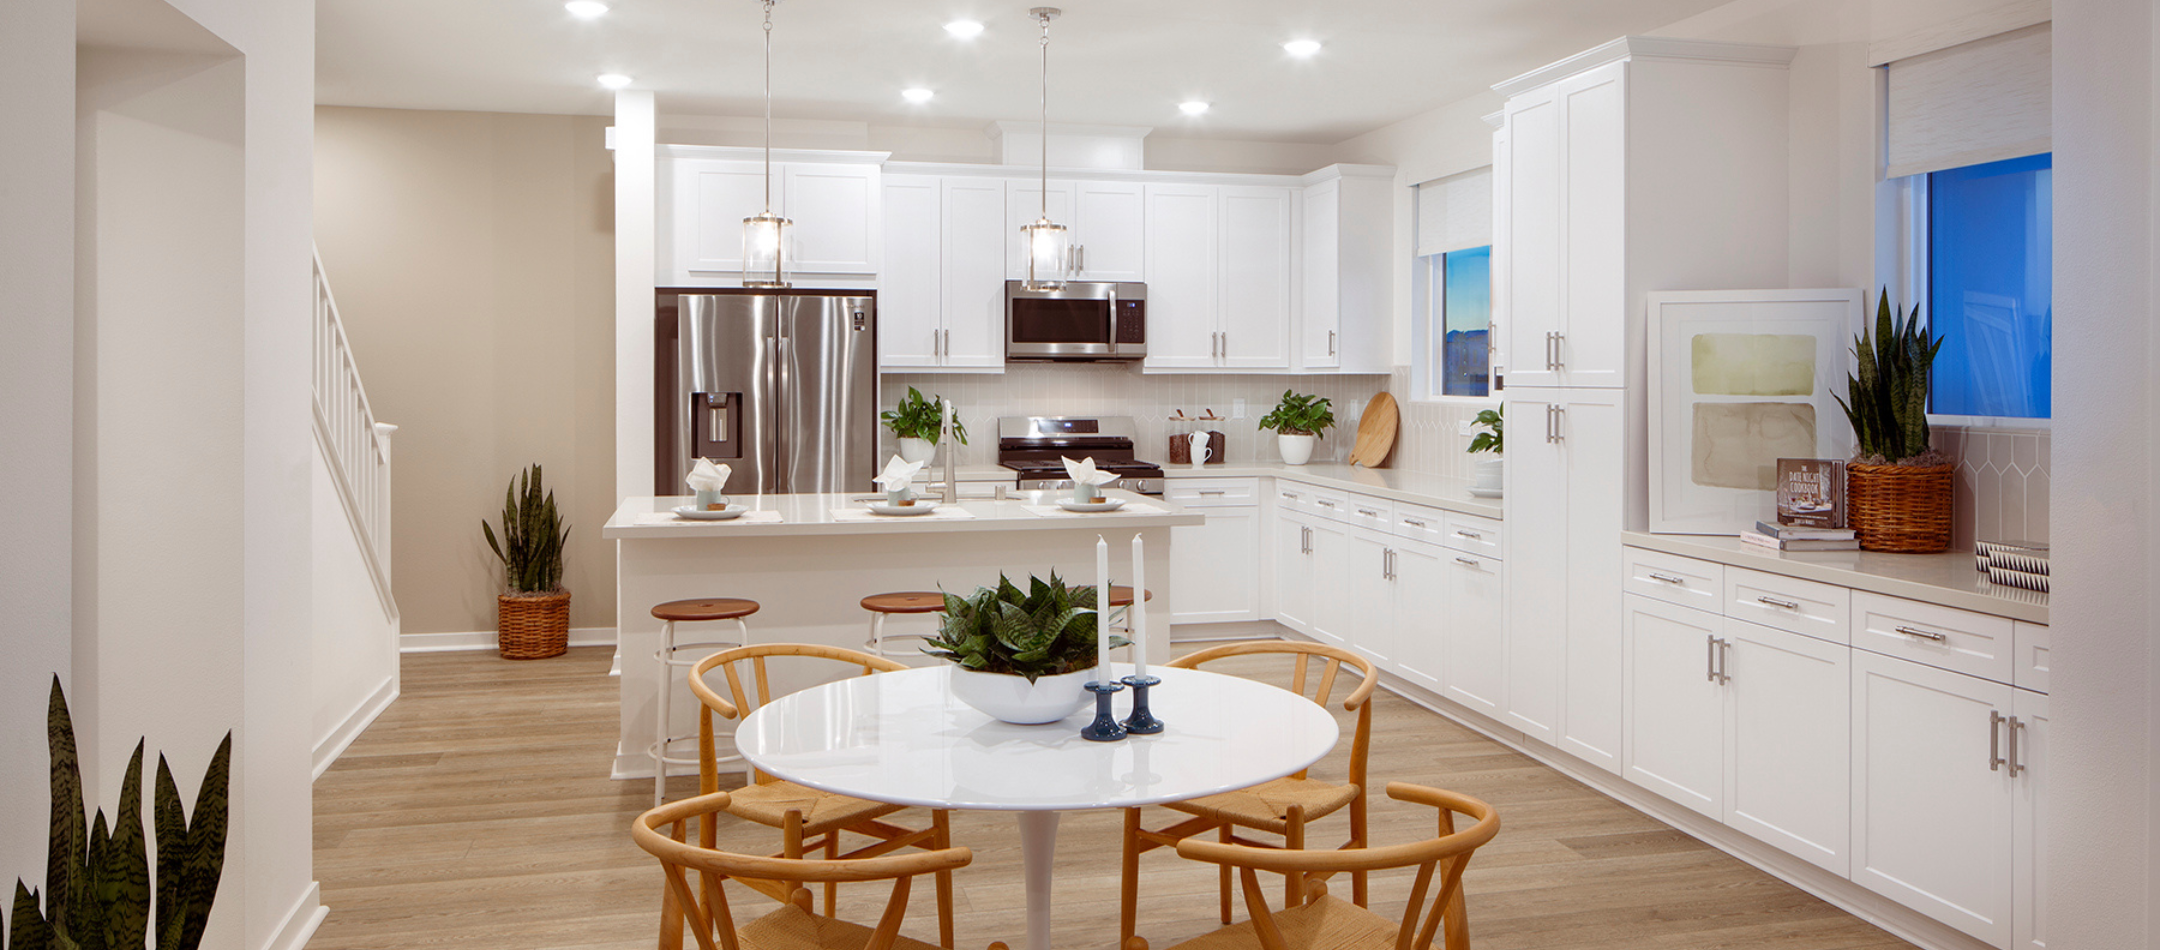 white kitchen image